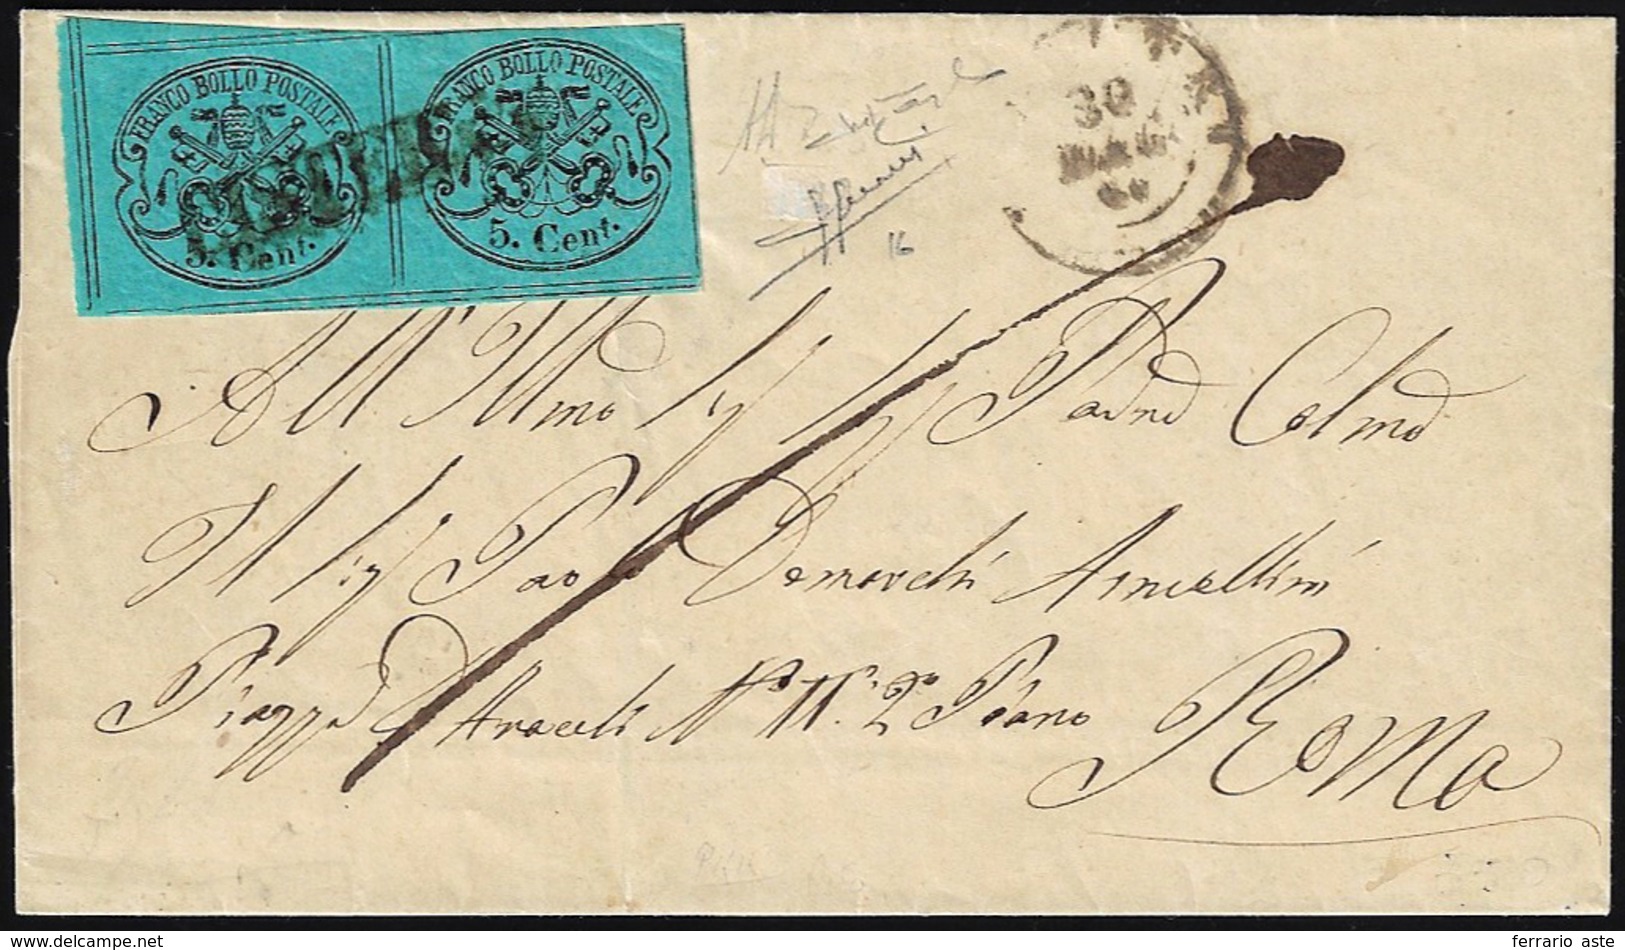 CISTERNA, Punti 13 - 5 Cent. (16), Coppia, Su Sovracoperta Di Lettera Del 30/5/1867, Datario Di Vell... - Kirchenstaaten